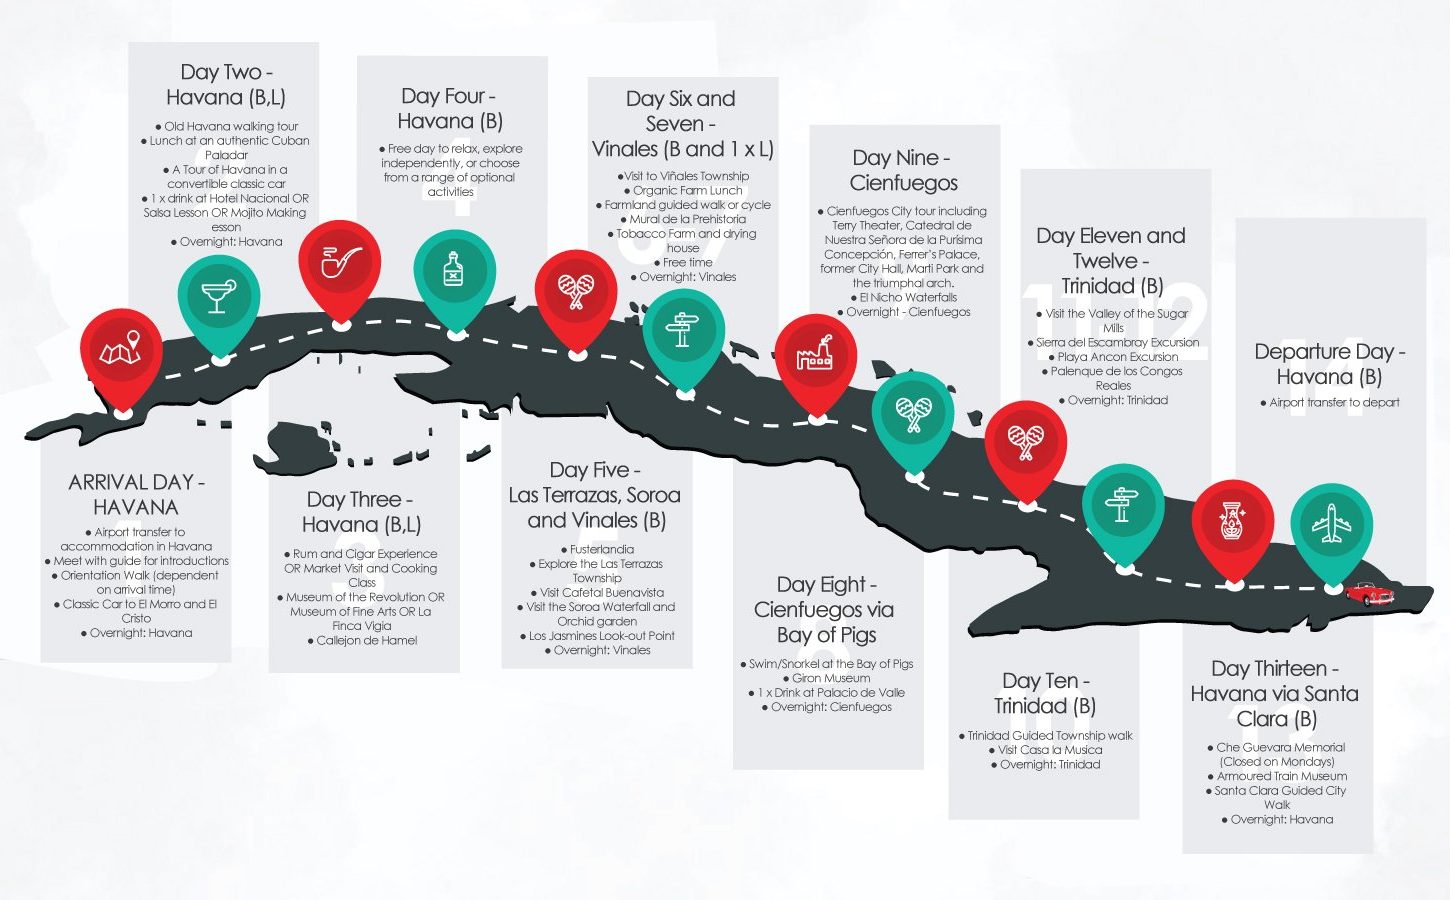 14-Day-Private-Cuba-tour-flow-diagram